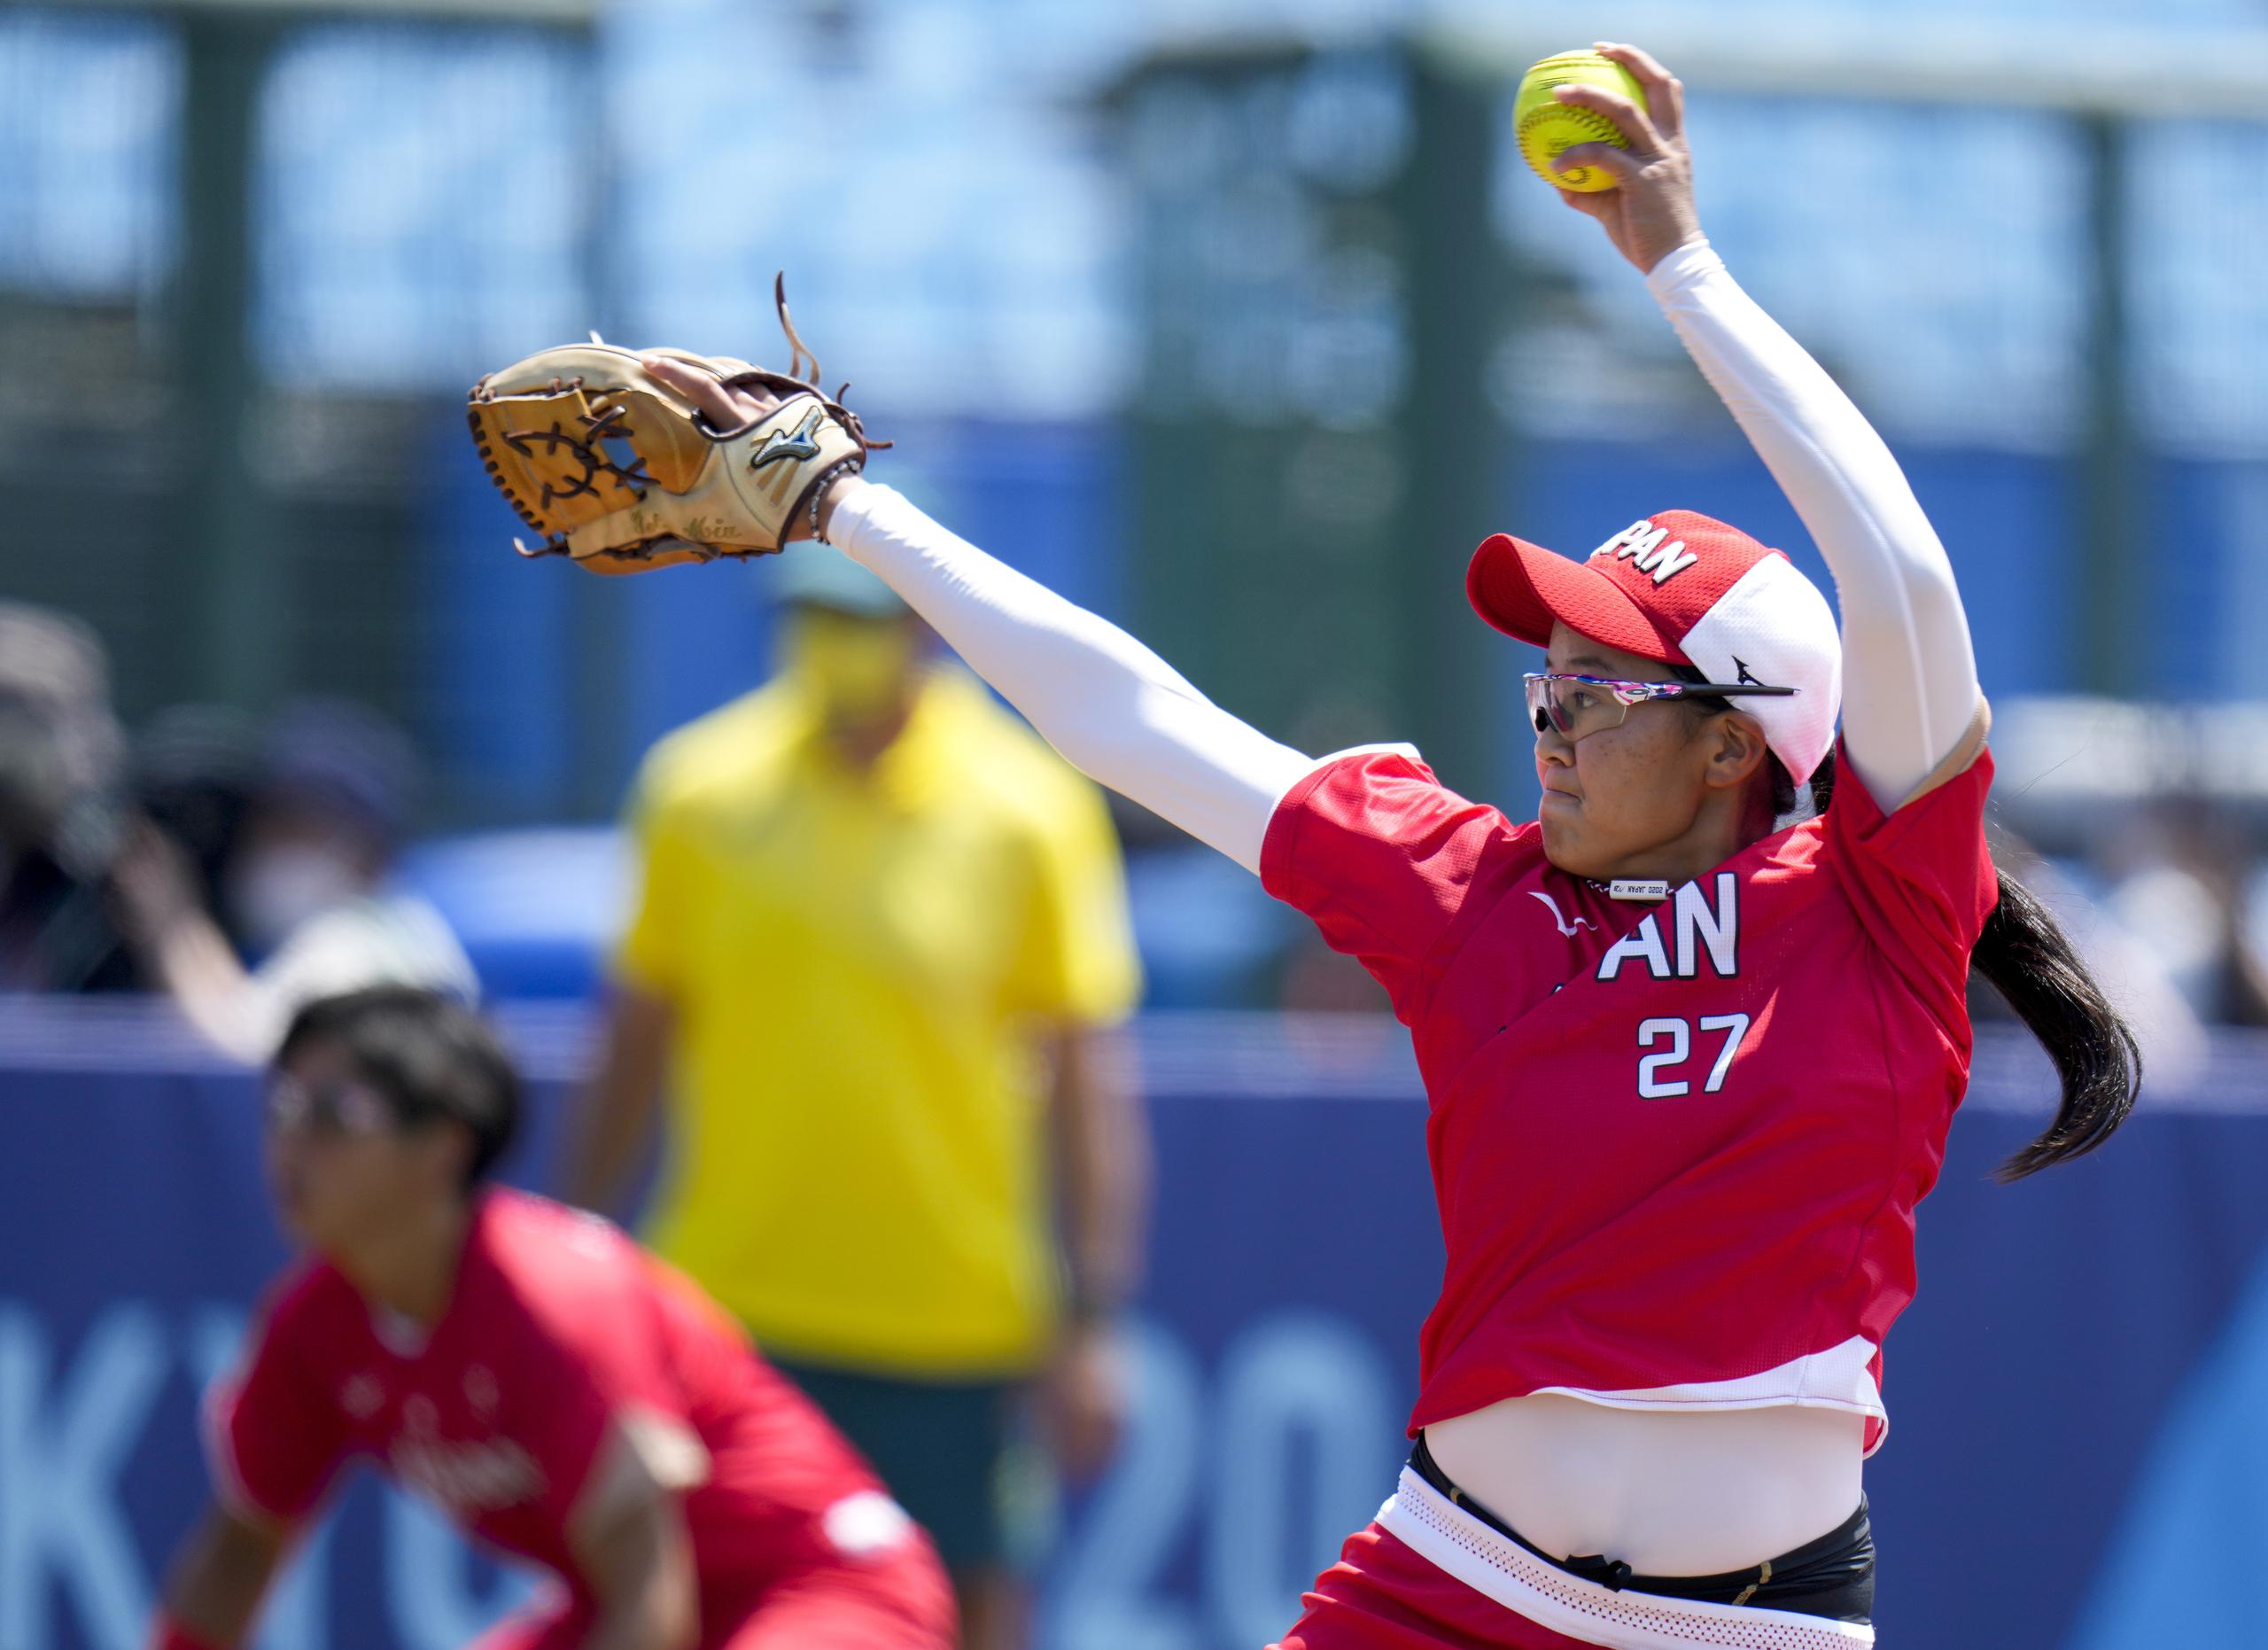 La lanzadora Miu Goto, de Japón, realiza un envío durante el encuentro inaugural del sóftbol femenino y de las Olimpiadas Tokio 2021.